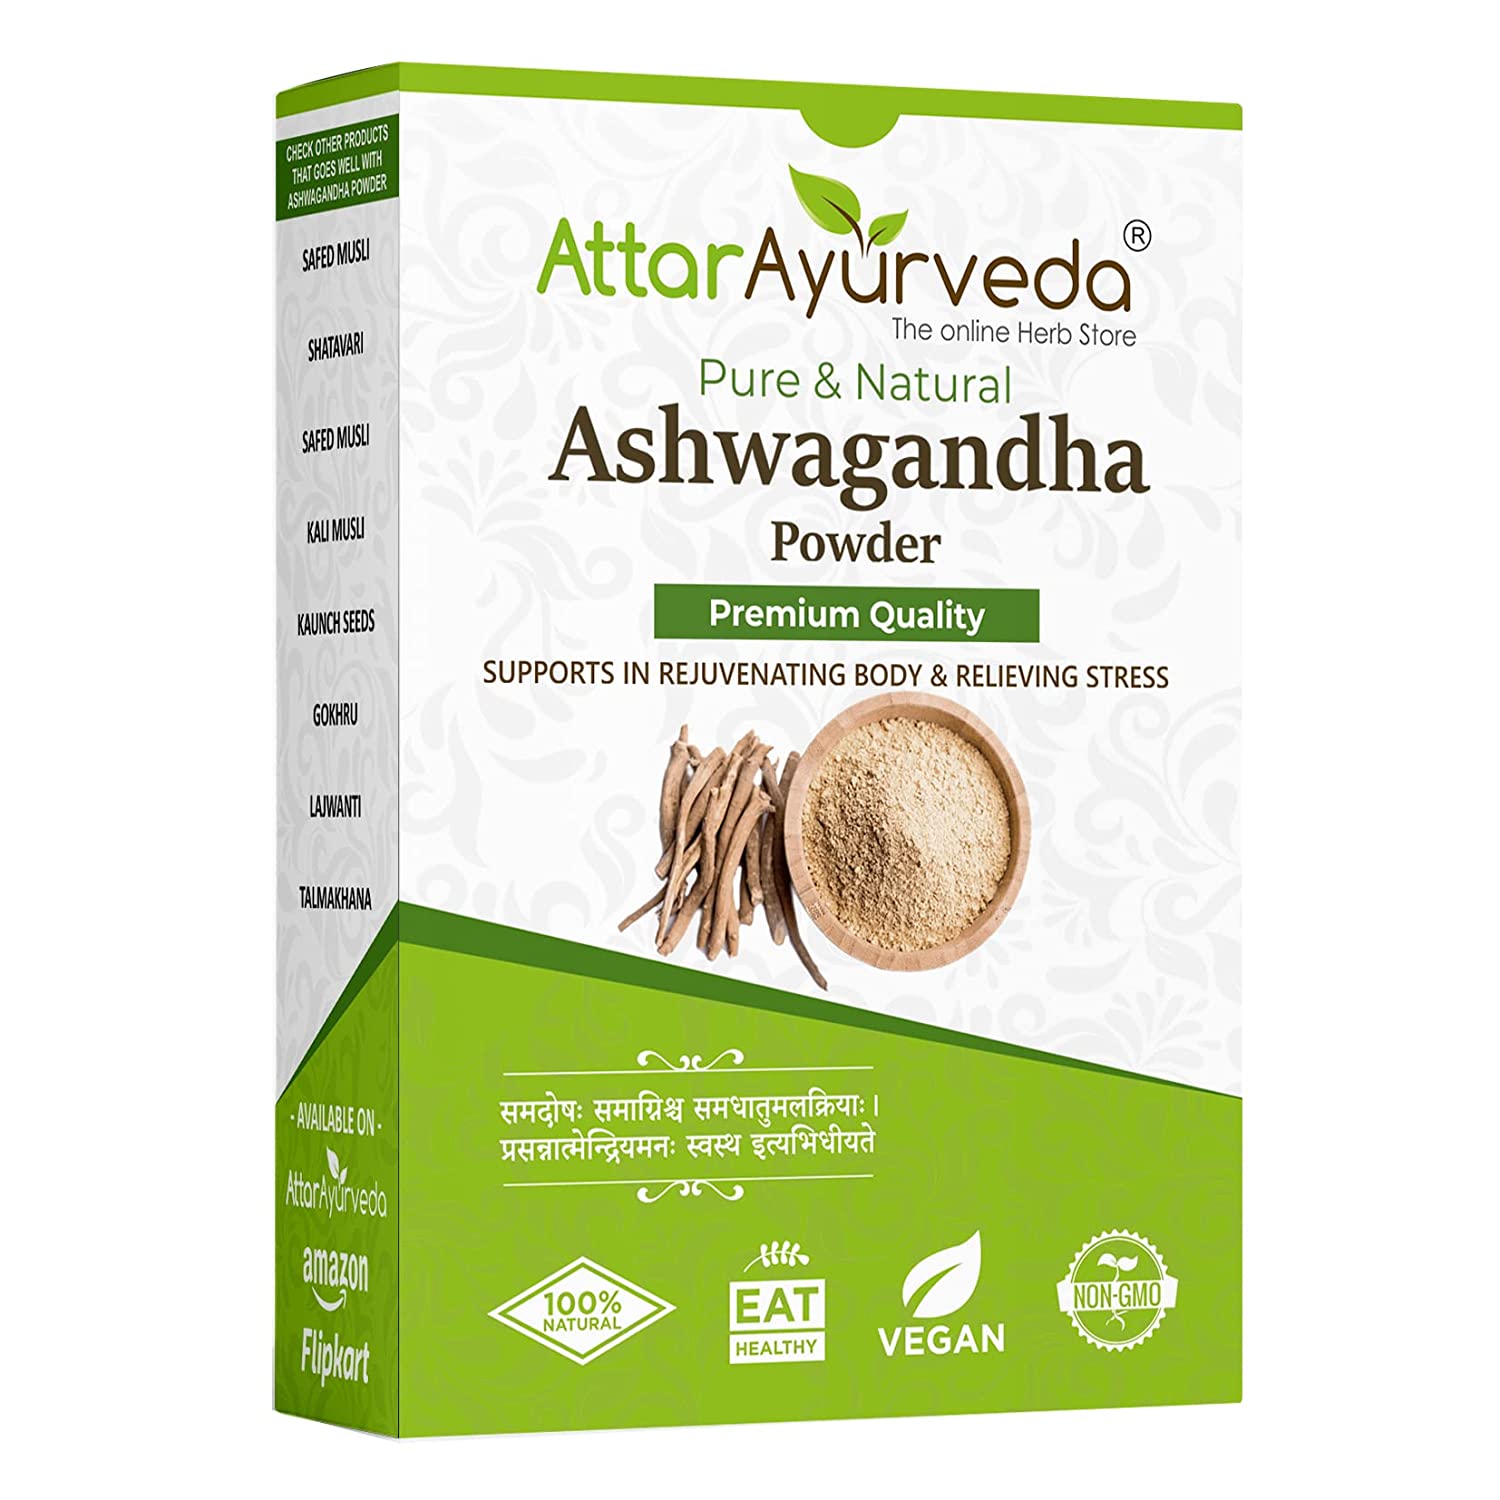 Attar Ayurveda Ashwagandha Powder